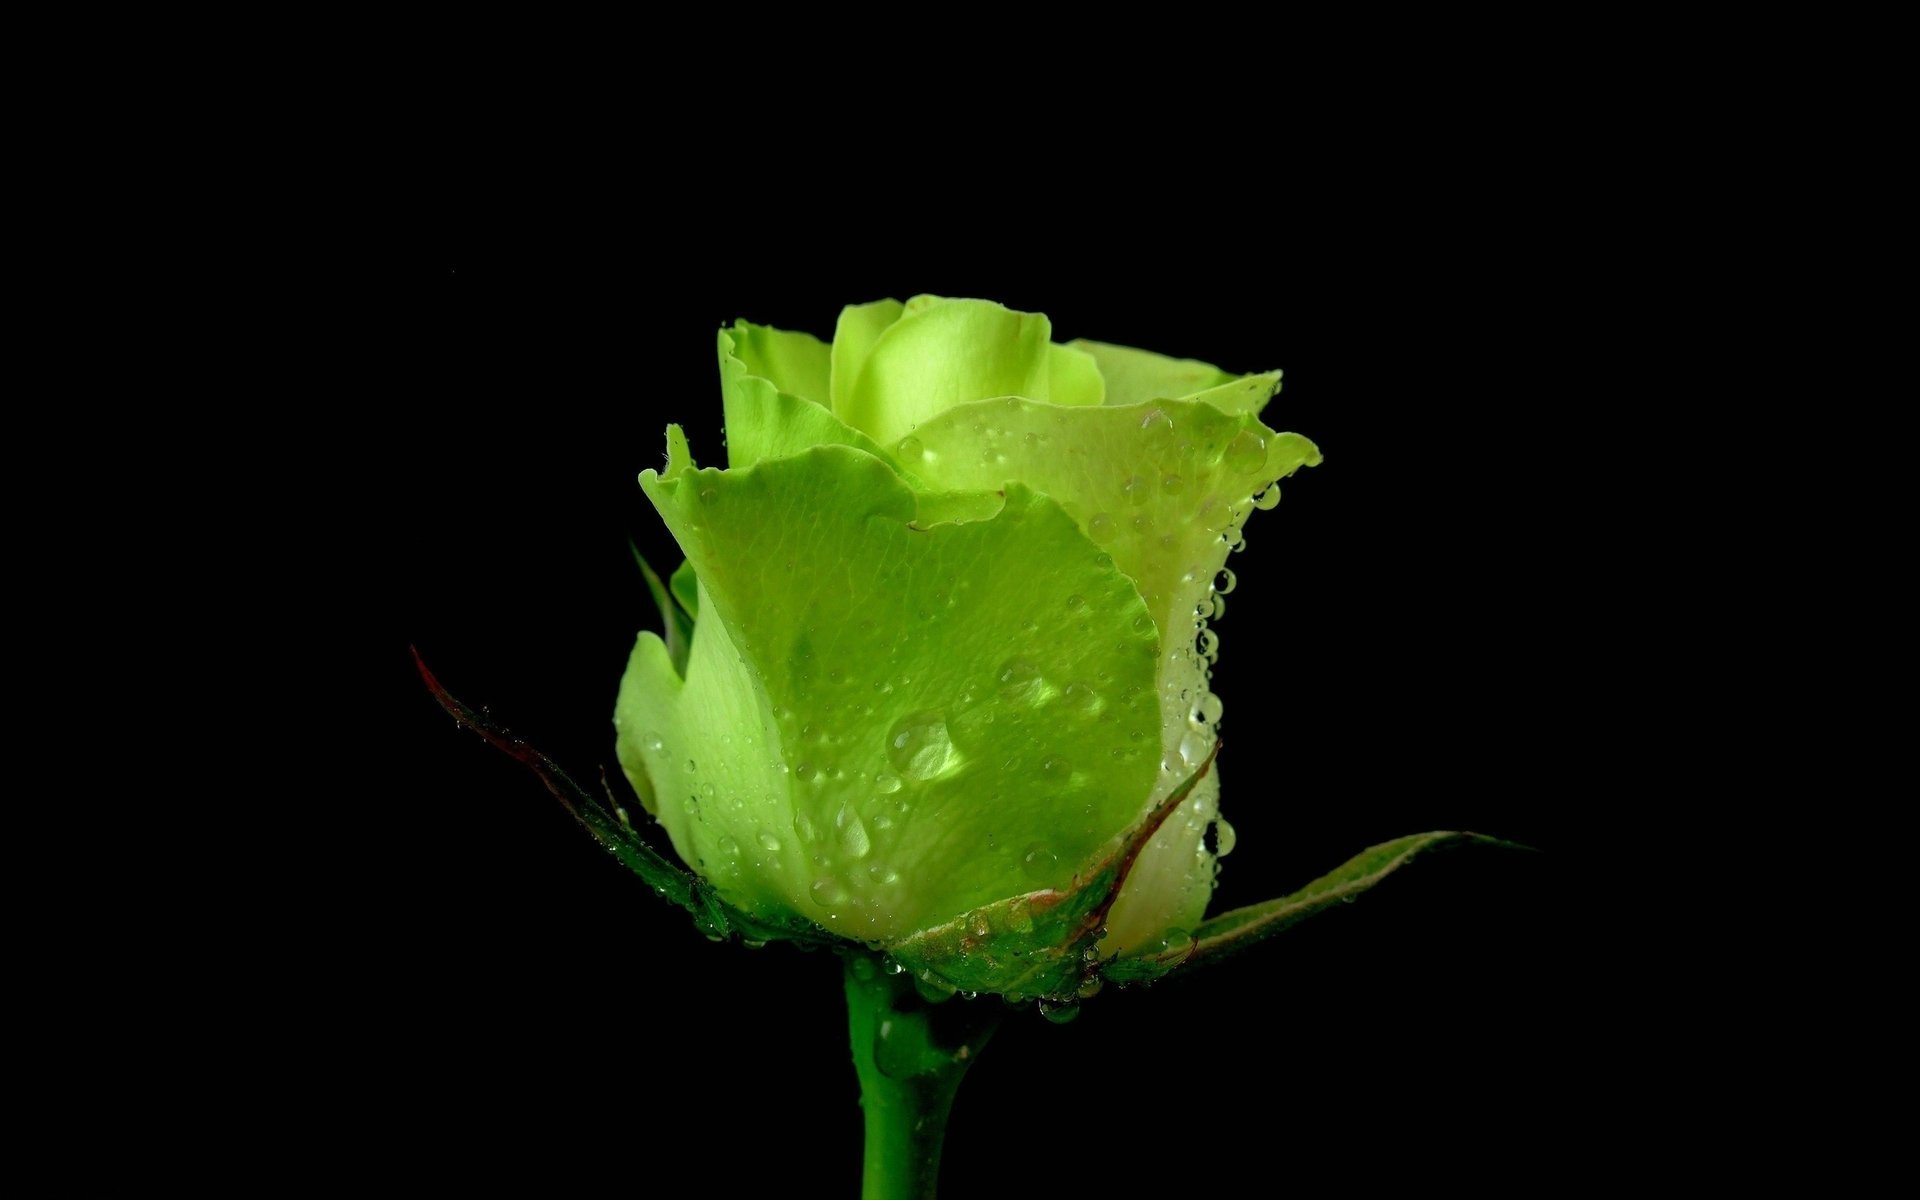 Бутон зелёной розы с каплями воды.